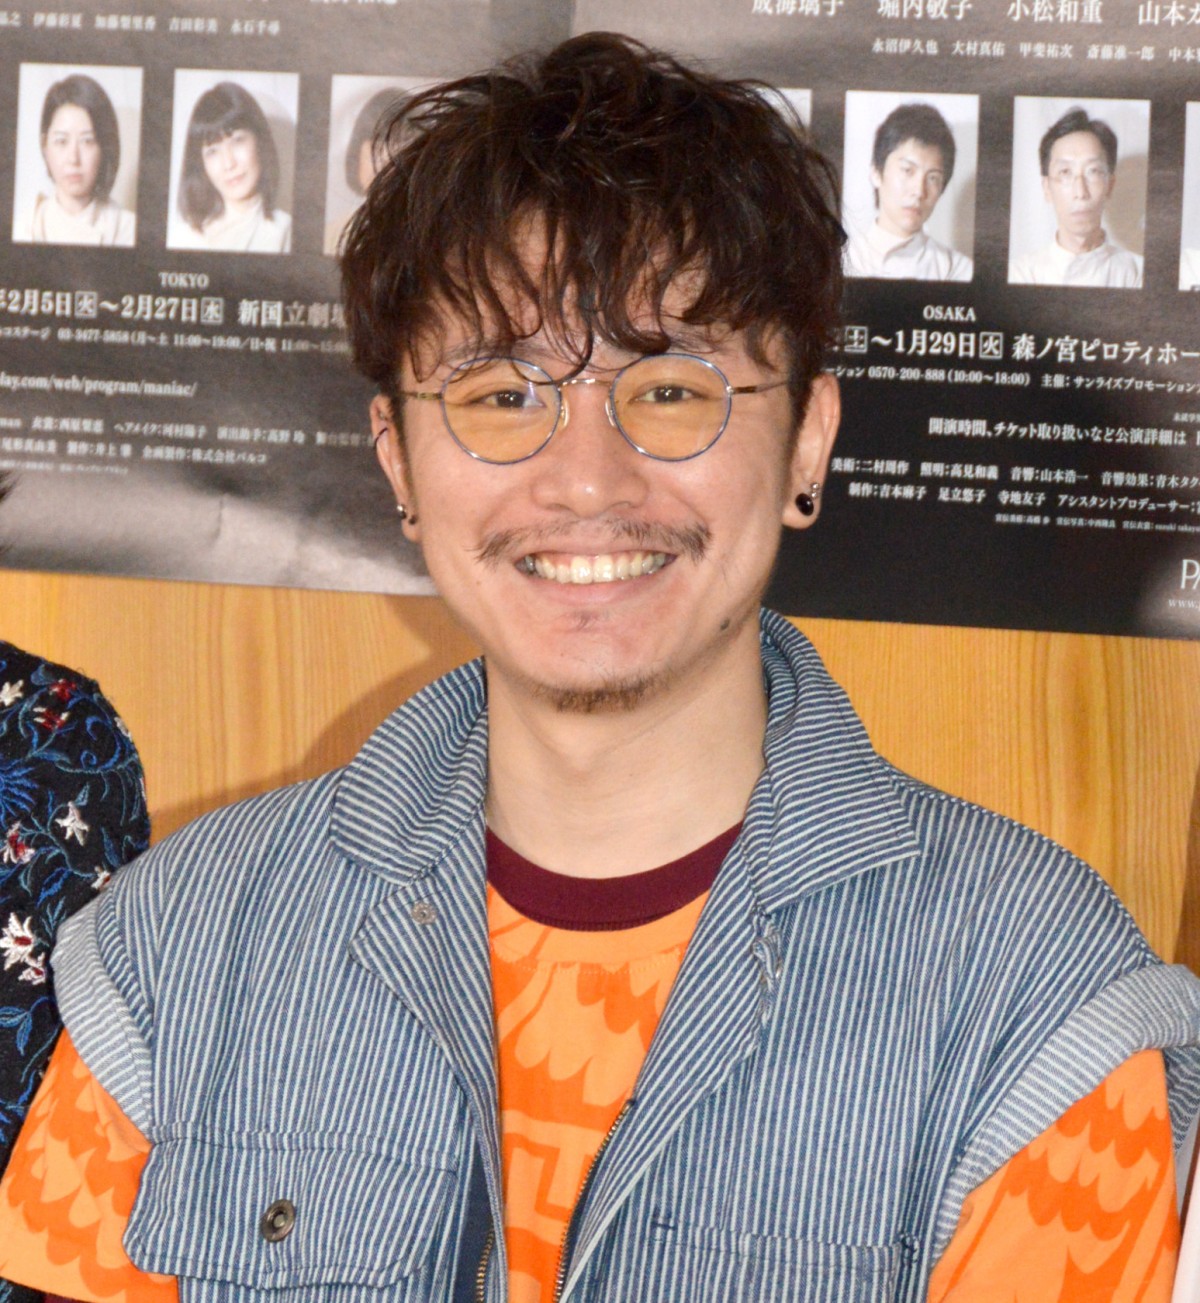 安田章大、2年ぶり主演舞台は「ブラボー」再演には首かしげる | ORICON